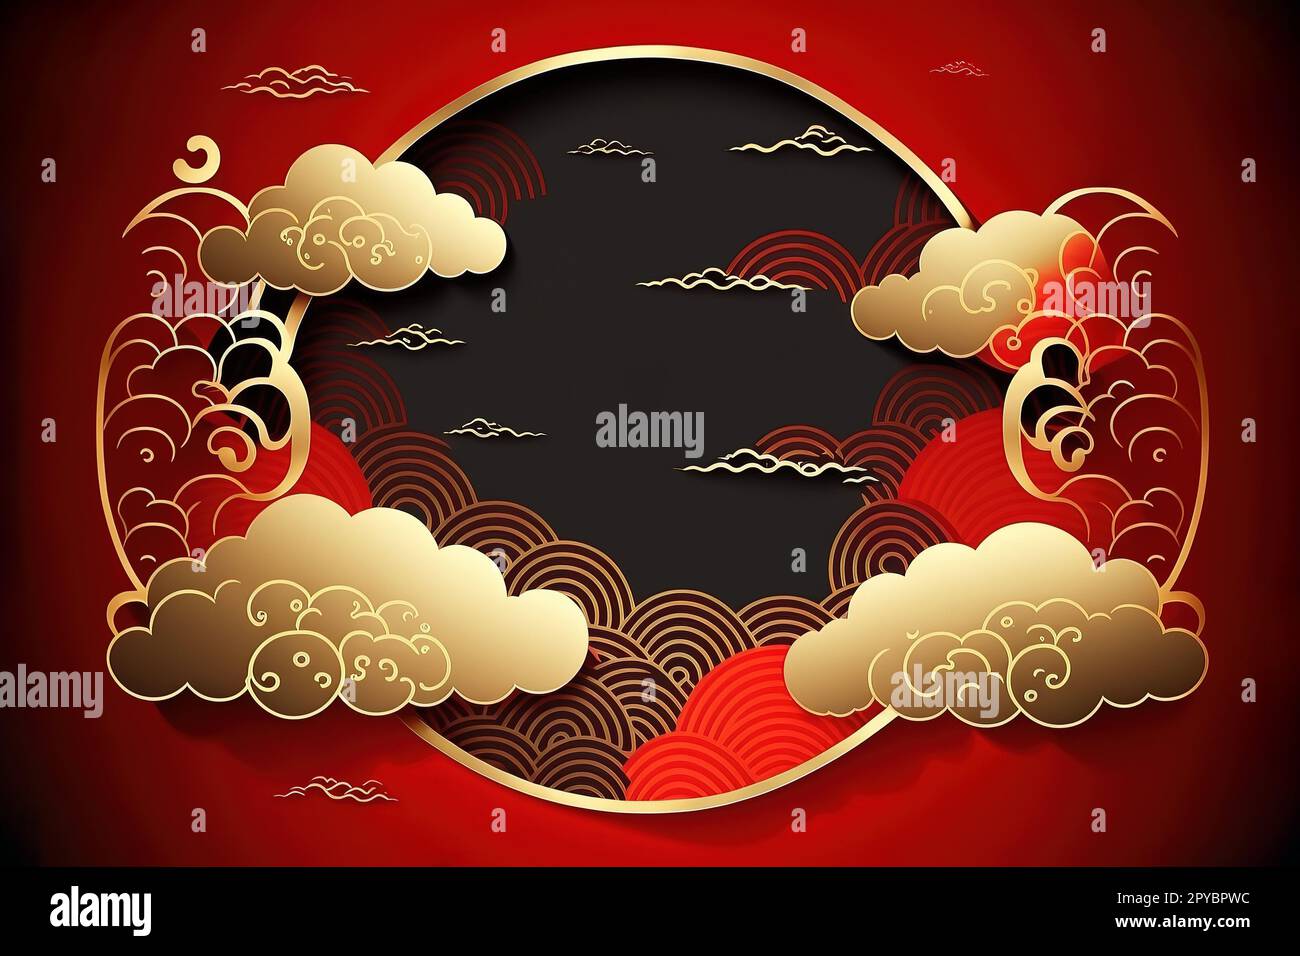 Carte de voeux chinoise ou bannière avec nuages rouges et or et motifs asiatiques dans le style moderne. Style de cadre chinois vectoriel sur fond rouge, illustrations. Ornement oriental traditionnel chinois Banque D'Images